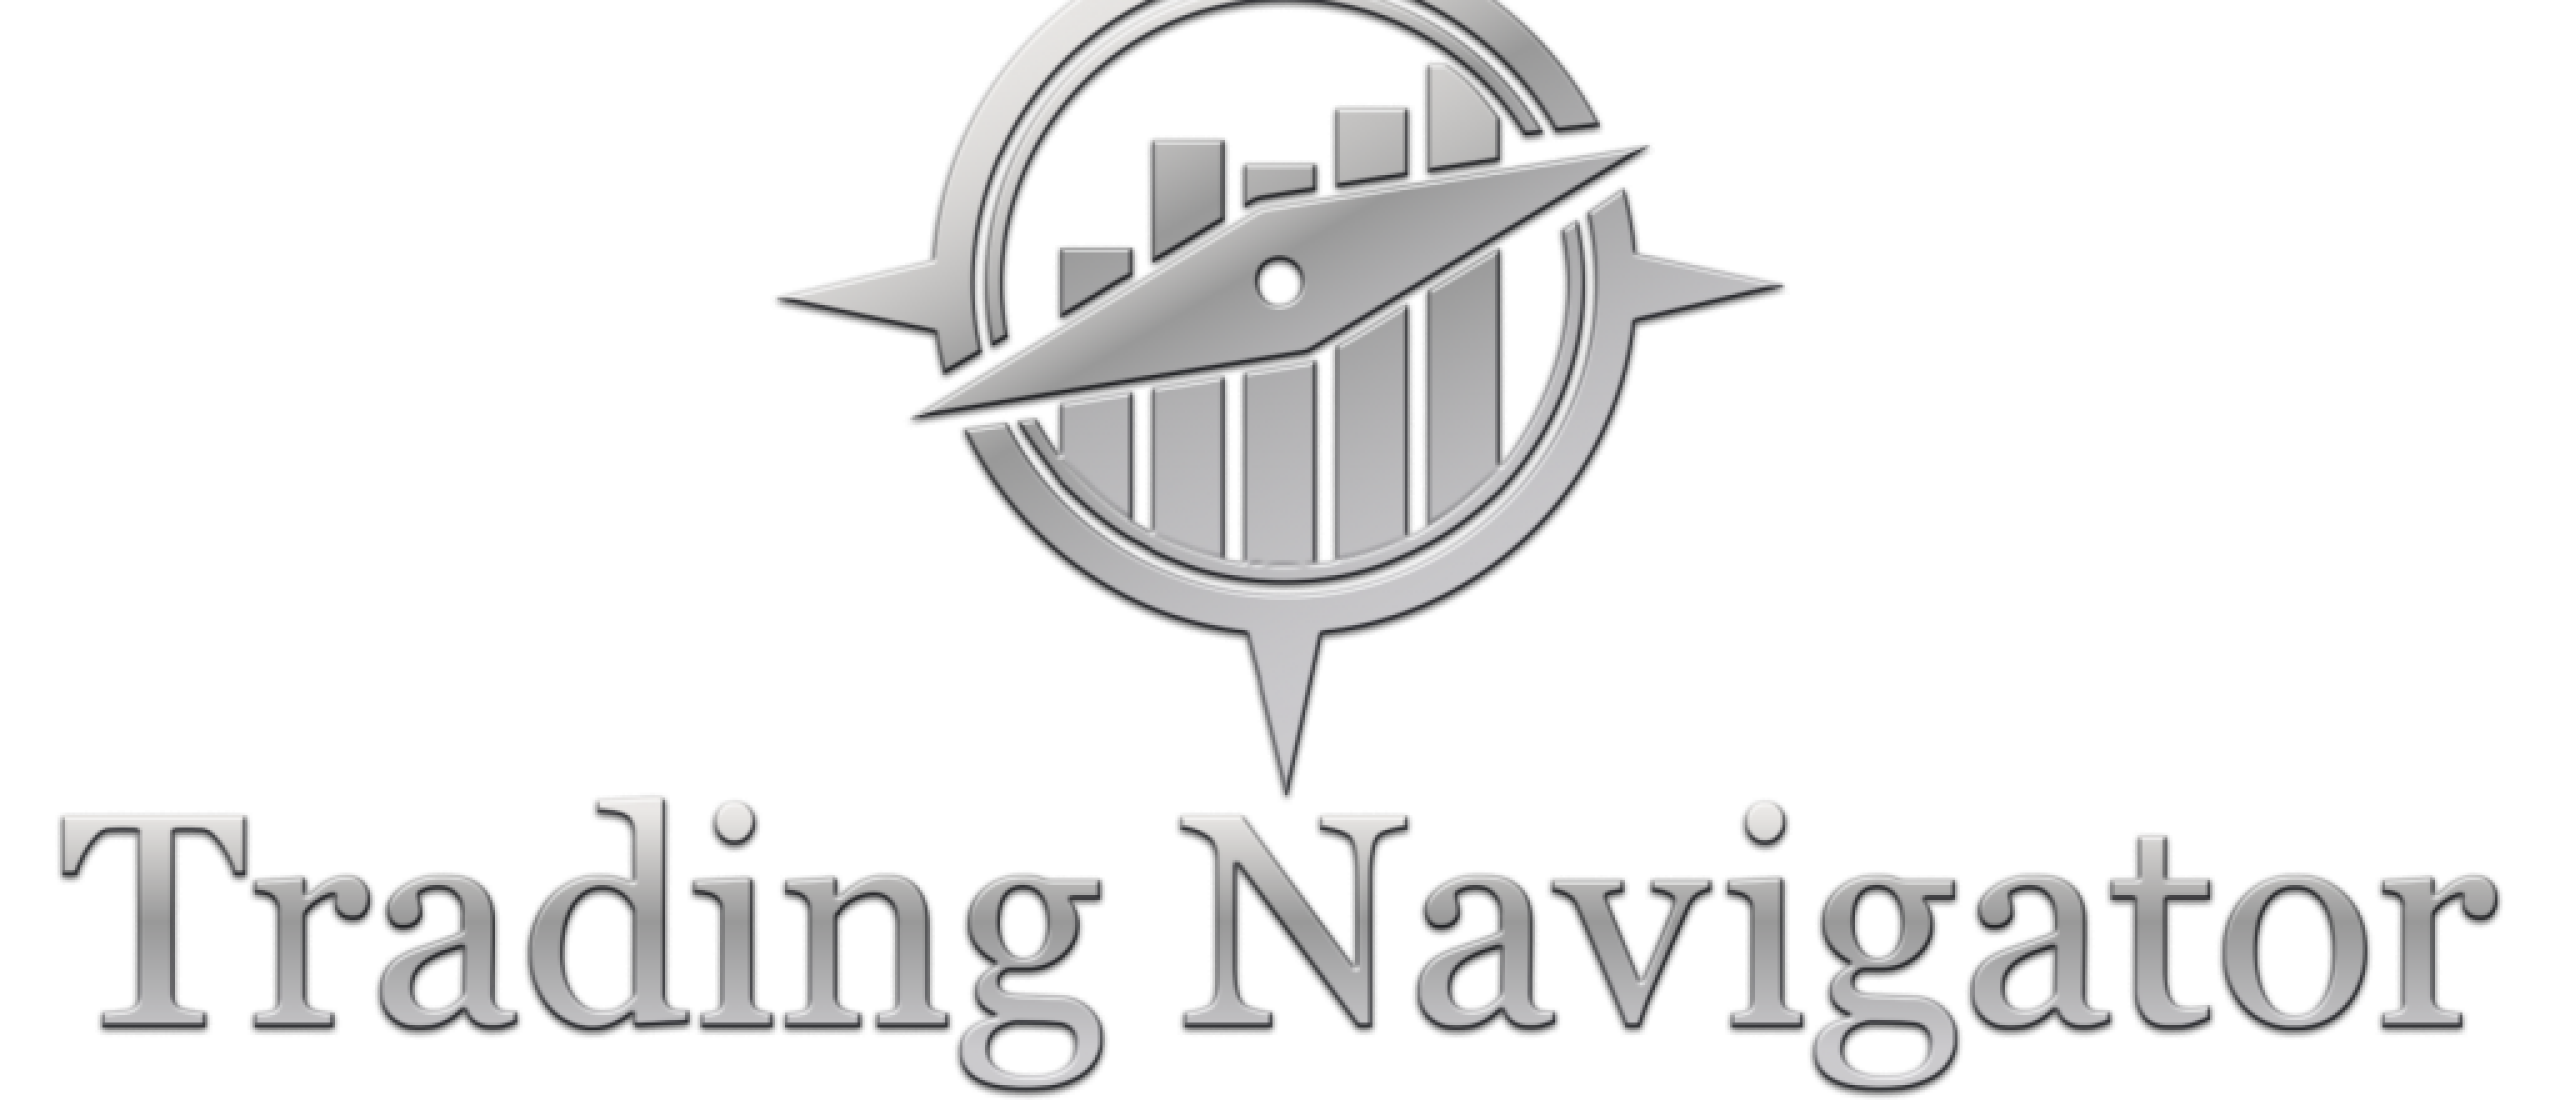 Trading Navigator Methode Review - Harm van wijk